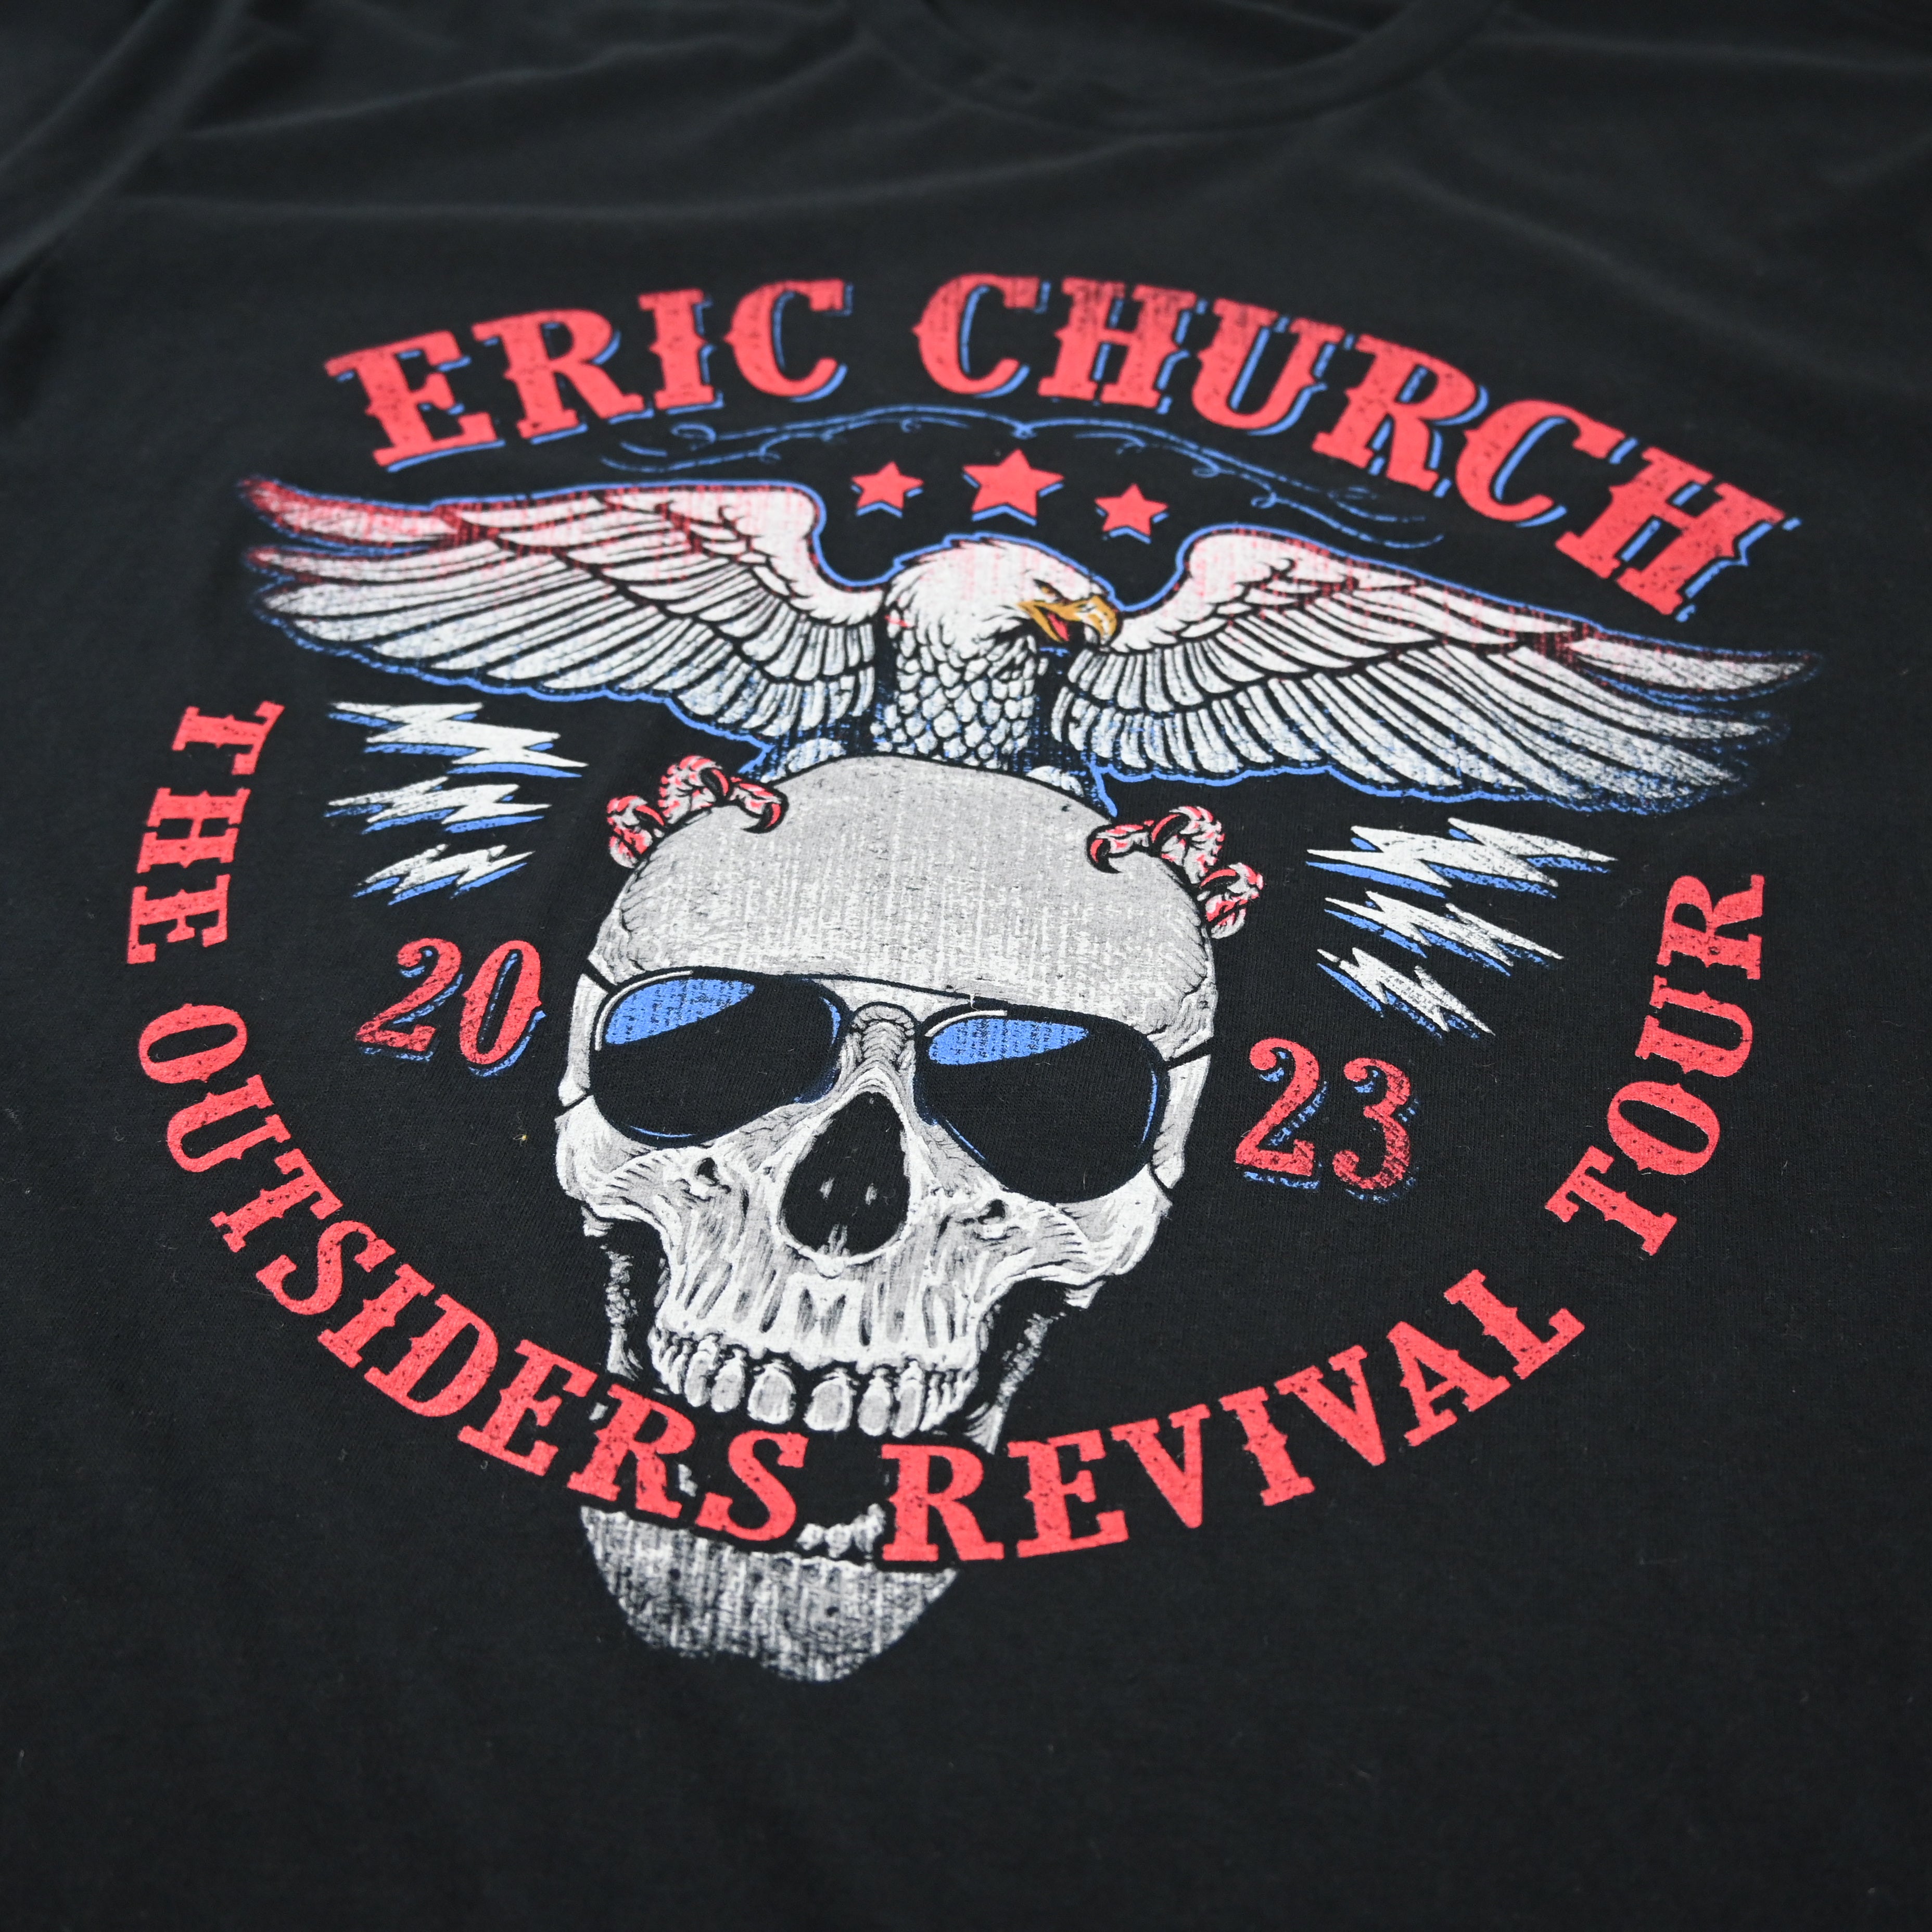 The Outsiders Revival Tour - Revival Skull T-Shirt